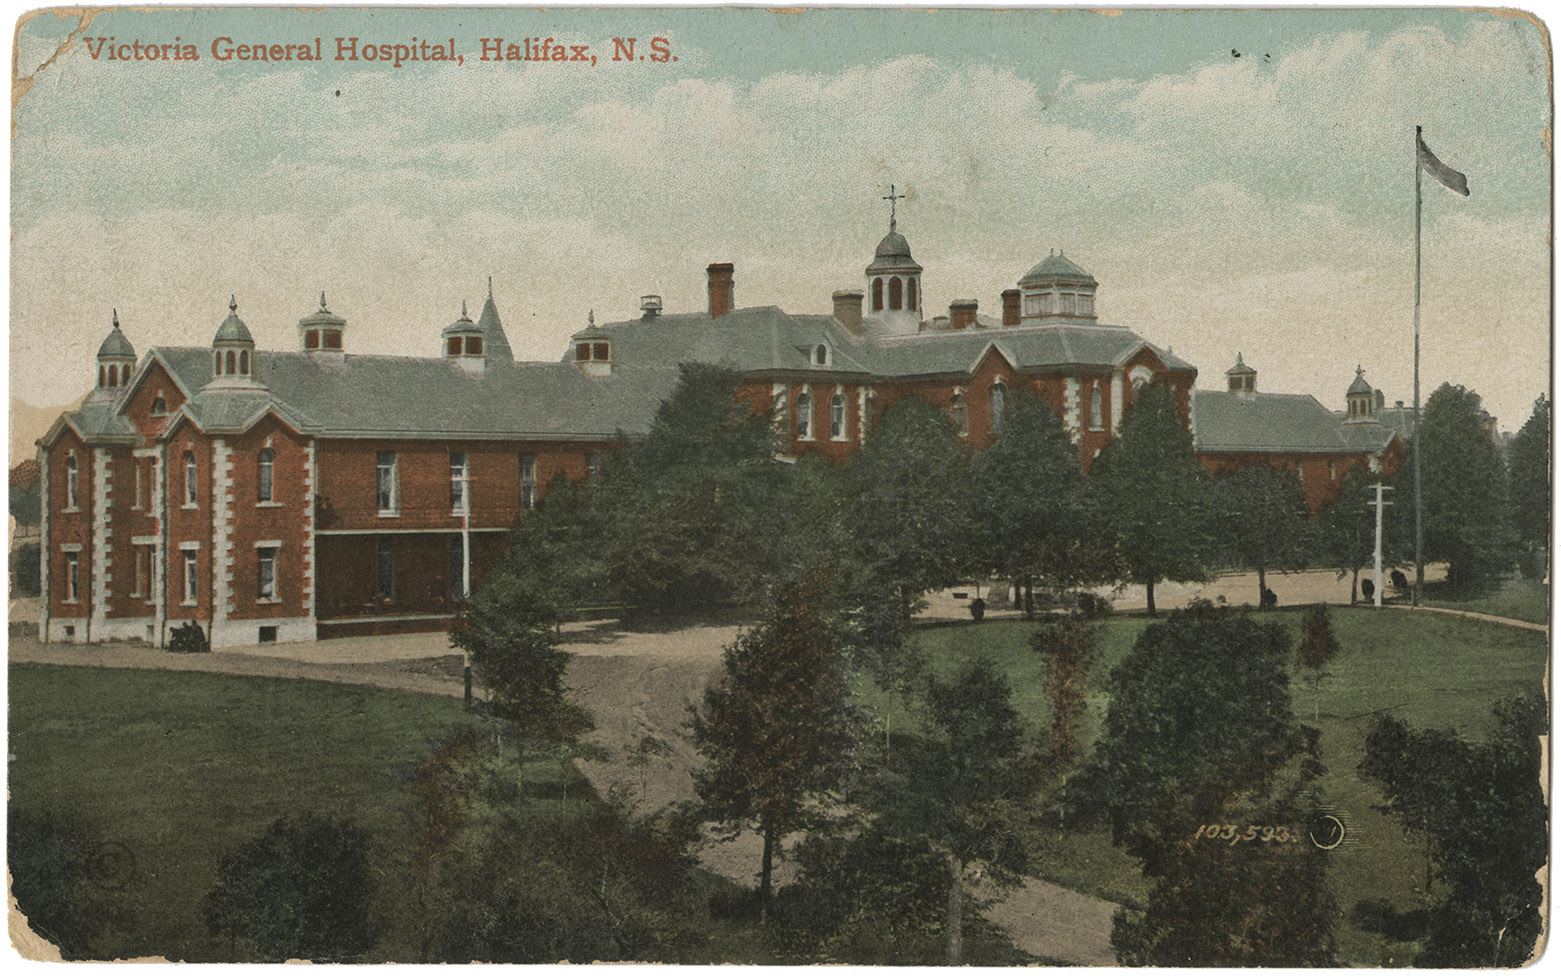 communityalbums - Victoria General Hospital, Halifax, N.S.